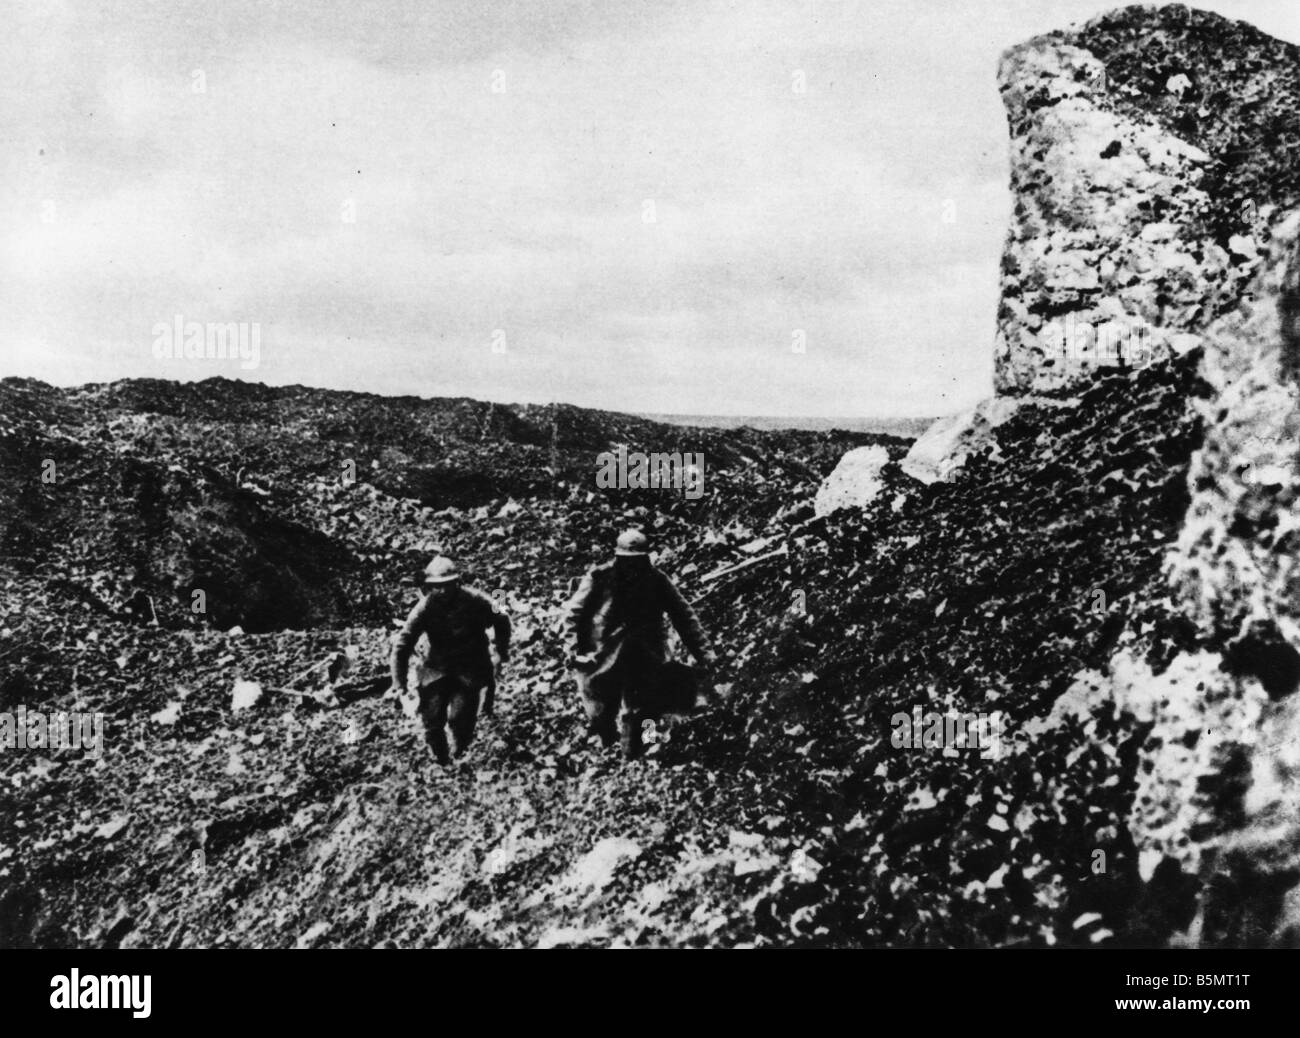 9FK 1916 11 22 A1 francese e messaggeri Verdun 1916 I Guerra Mondiale Francia battaglia di Verdun 1916 messaggeri francese portando notizie a Fo Foto Stock